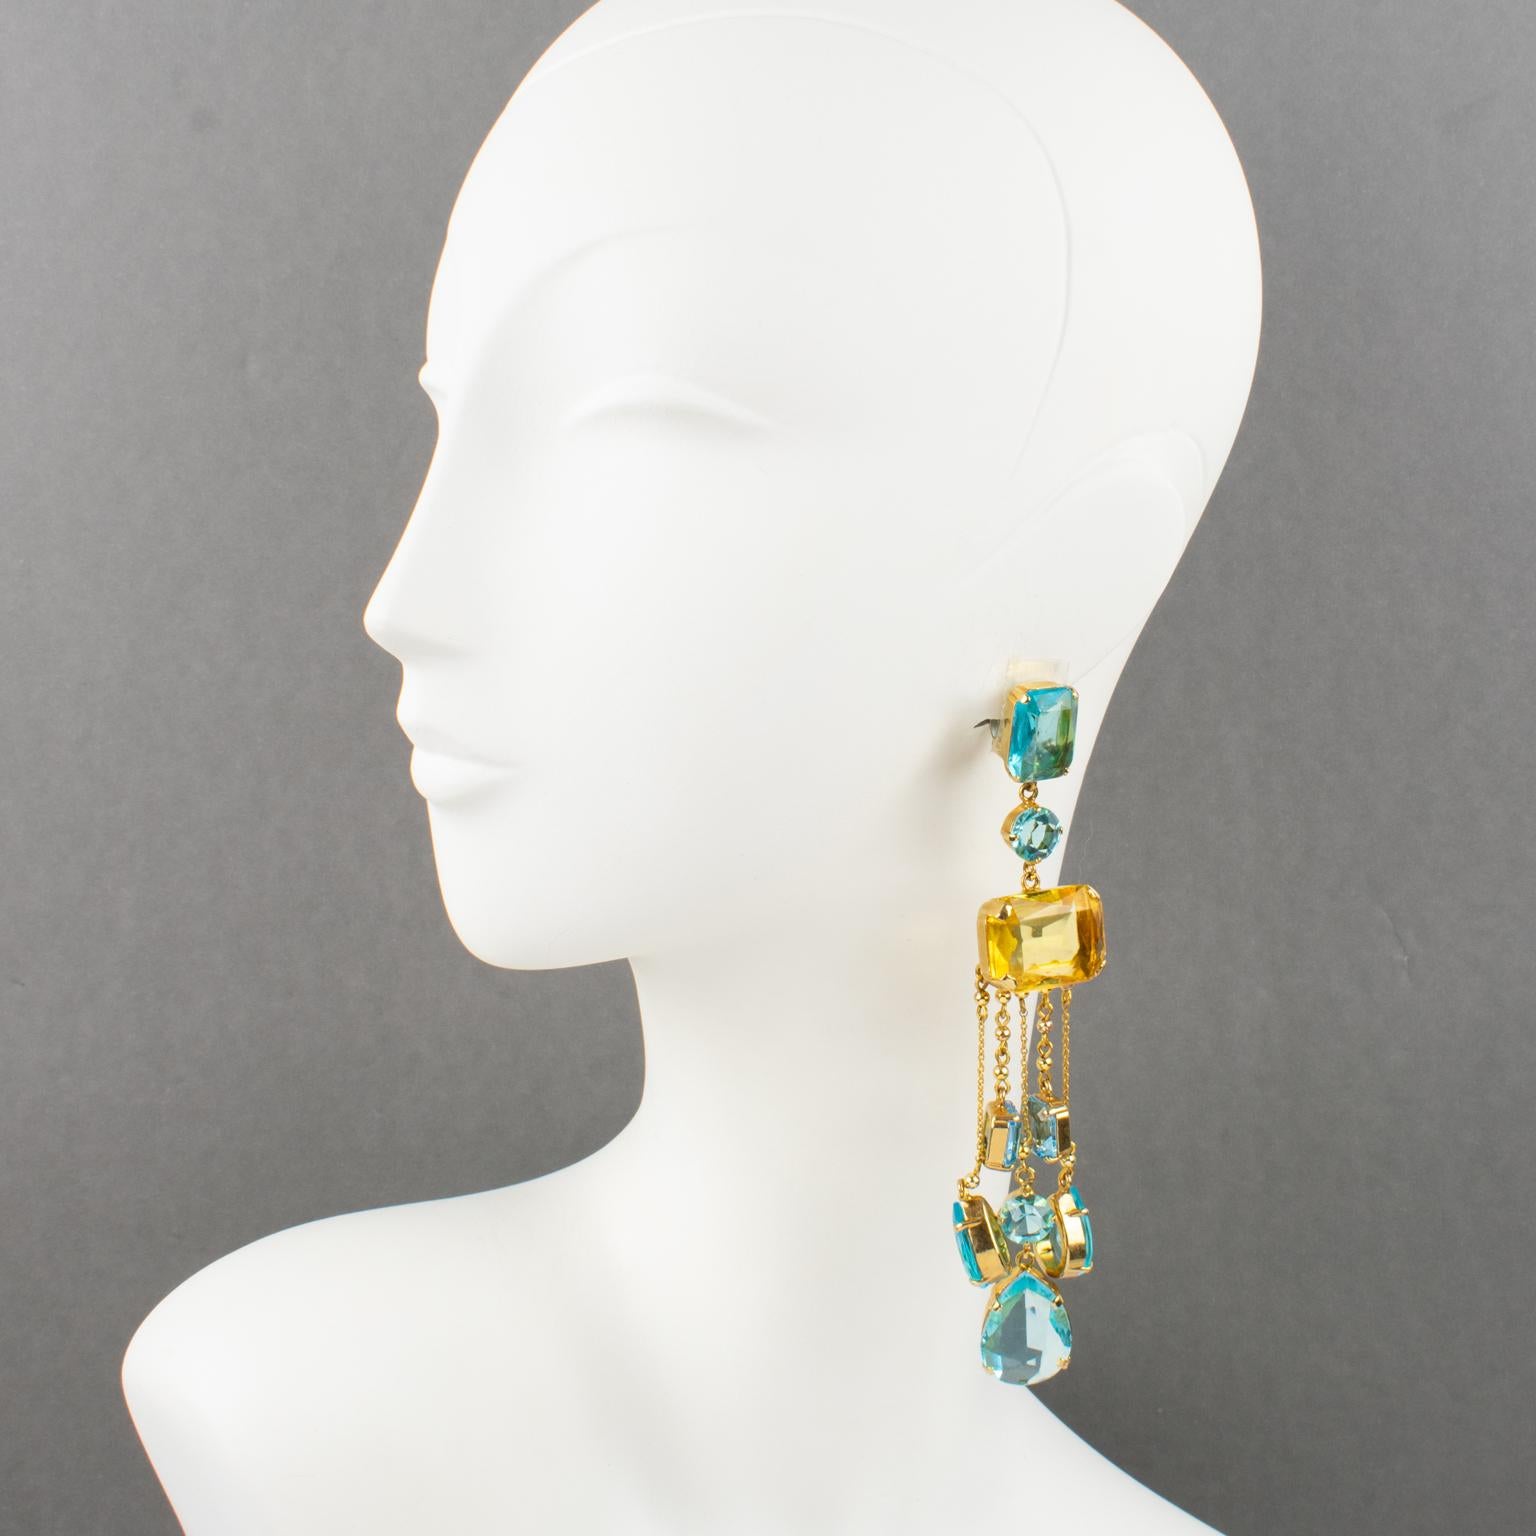 Carlo Zini a conçu ces boucles d'oreilles pendantes et sophistiquées. Ils présentent une forme géométrique extra-longue en bandoulière avec un encadrement en métal doré orné de breloques pendantes. Les strass de couleur aigue-marine, turquoise et